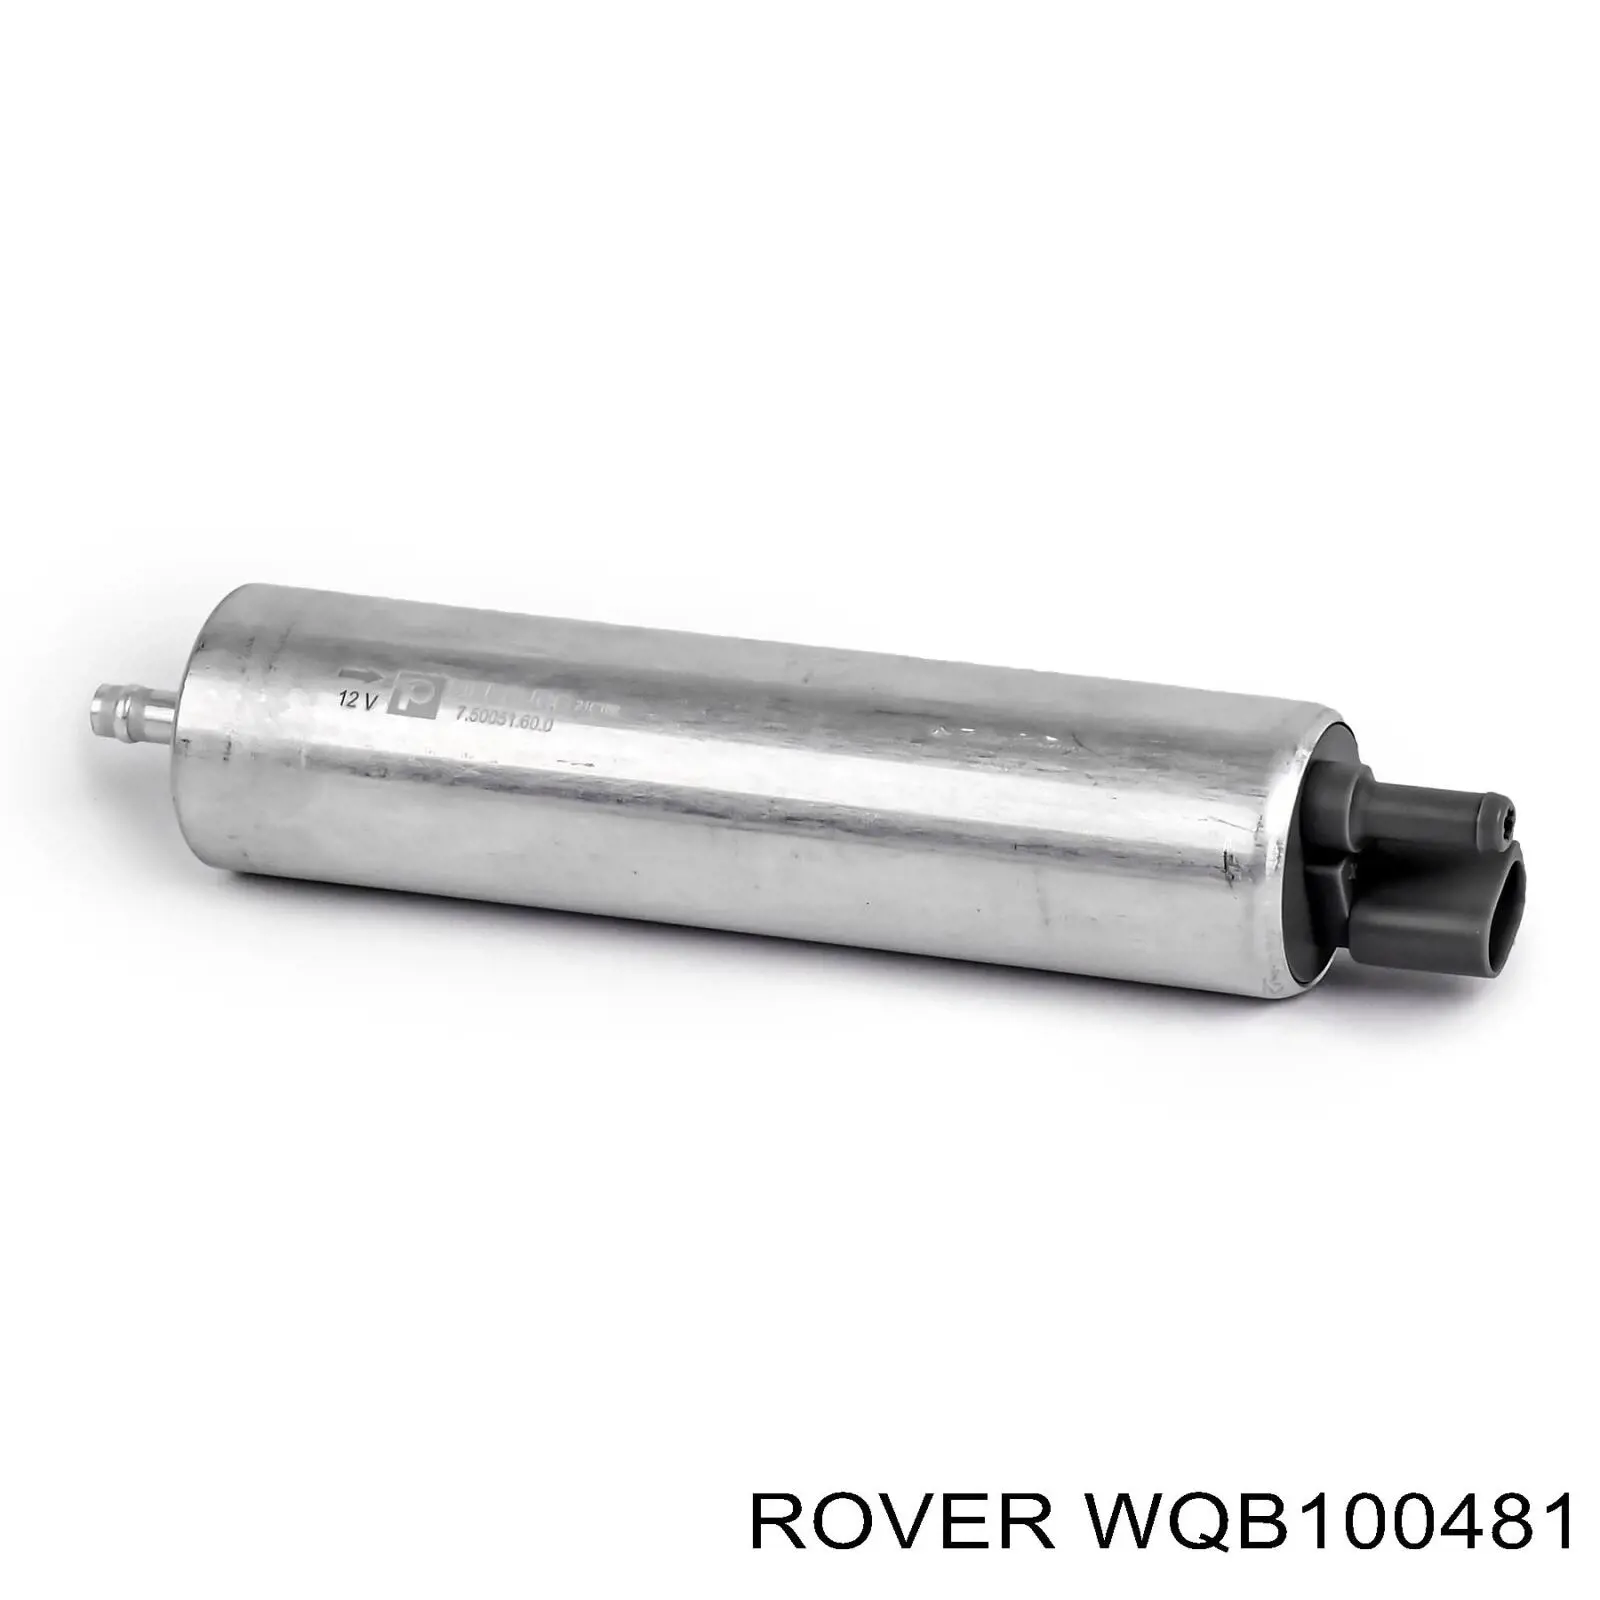 WQB100481 Rover bomba de combustible principal